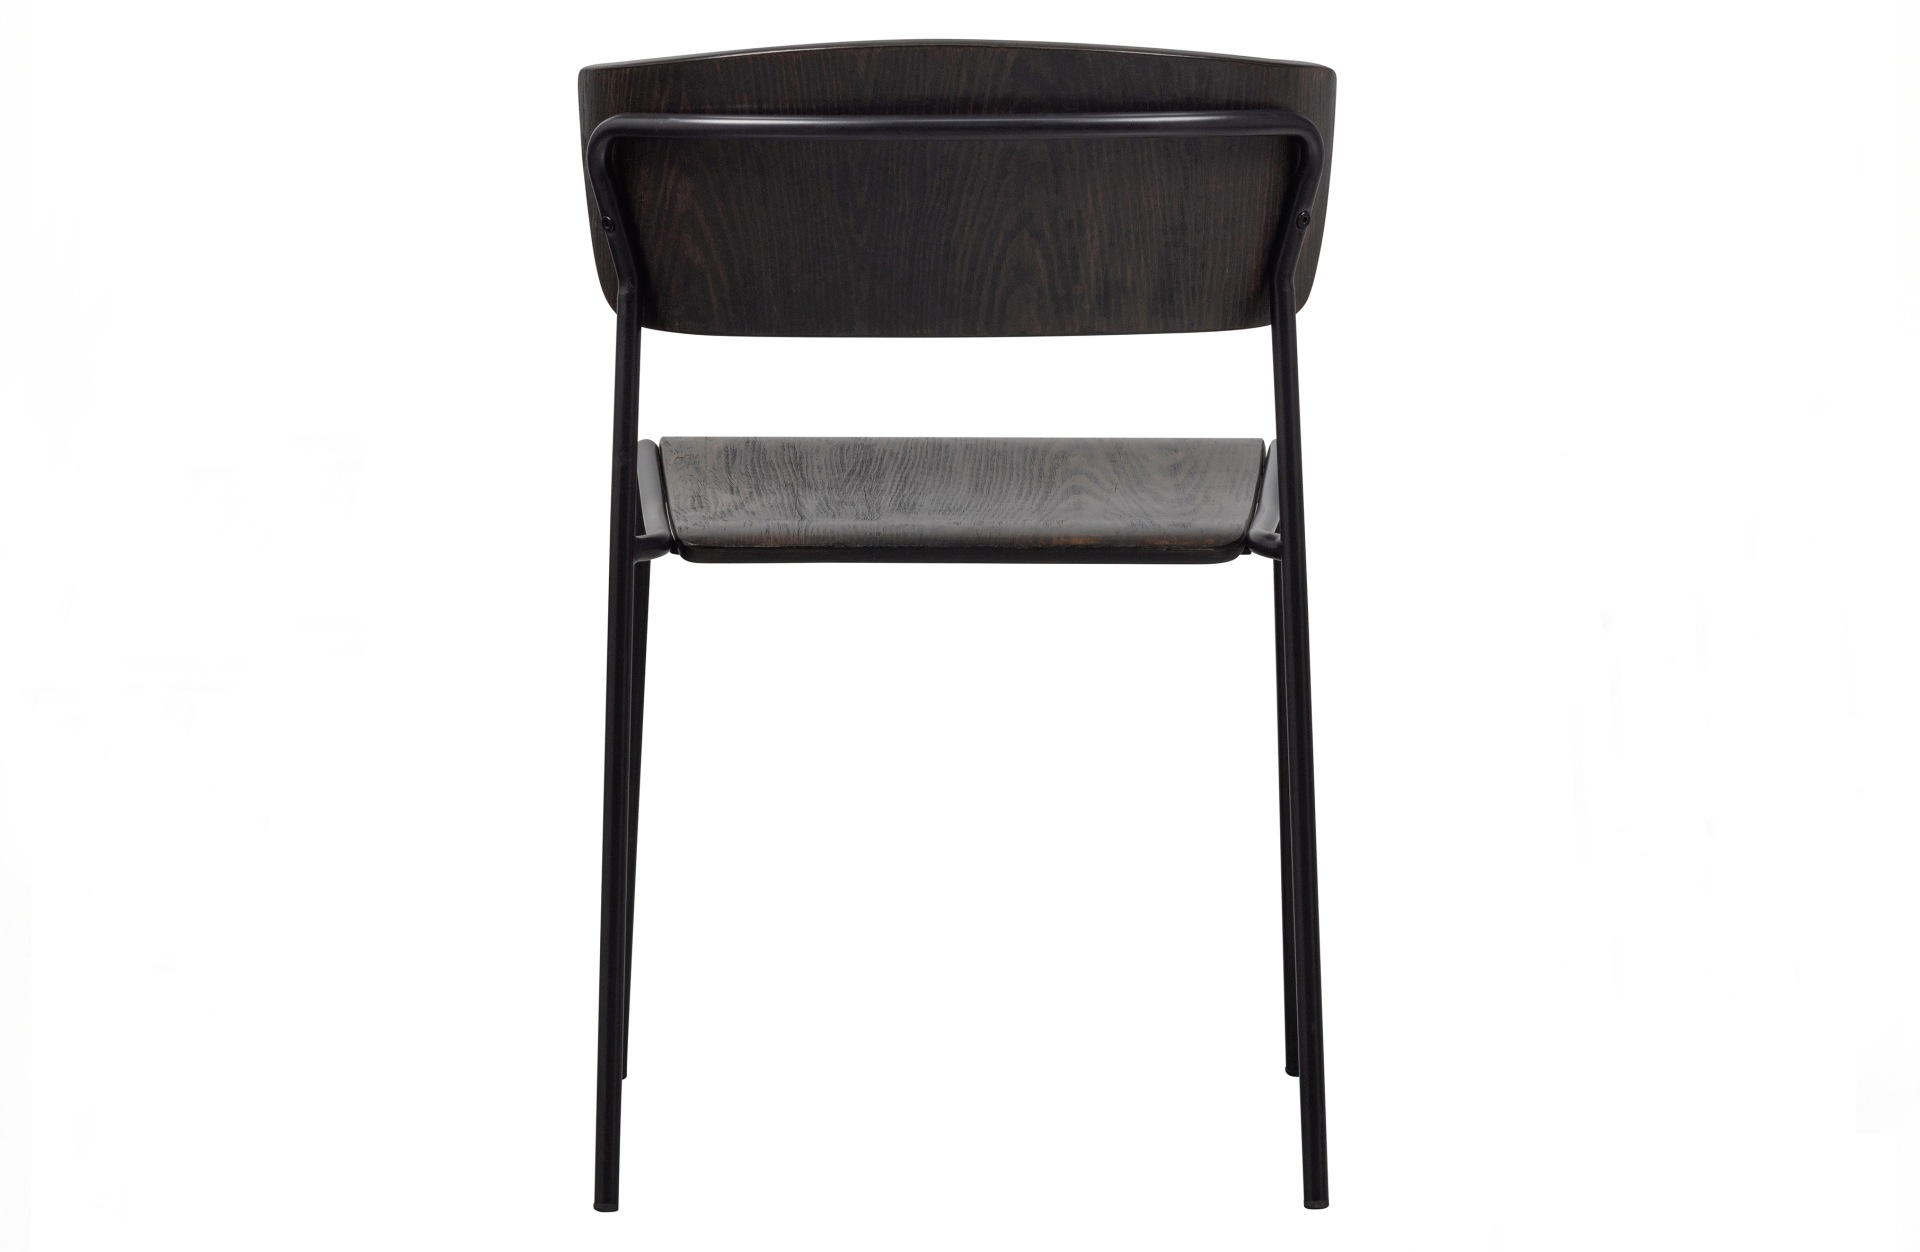 Der Esszimmerstuhl Ciro überzeugt mit seinem modernen Design. Gefertigt wurde er aus Sperrholz, welches einen braunen Farbton besitzt. Das Gestell ist aus Metall und hat eine schwarze Farbe. Die Sitzhöhe beträgt 45 cm.